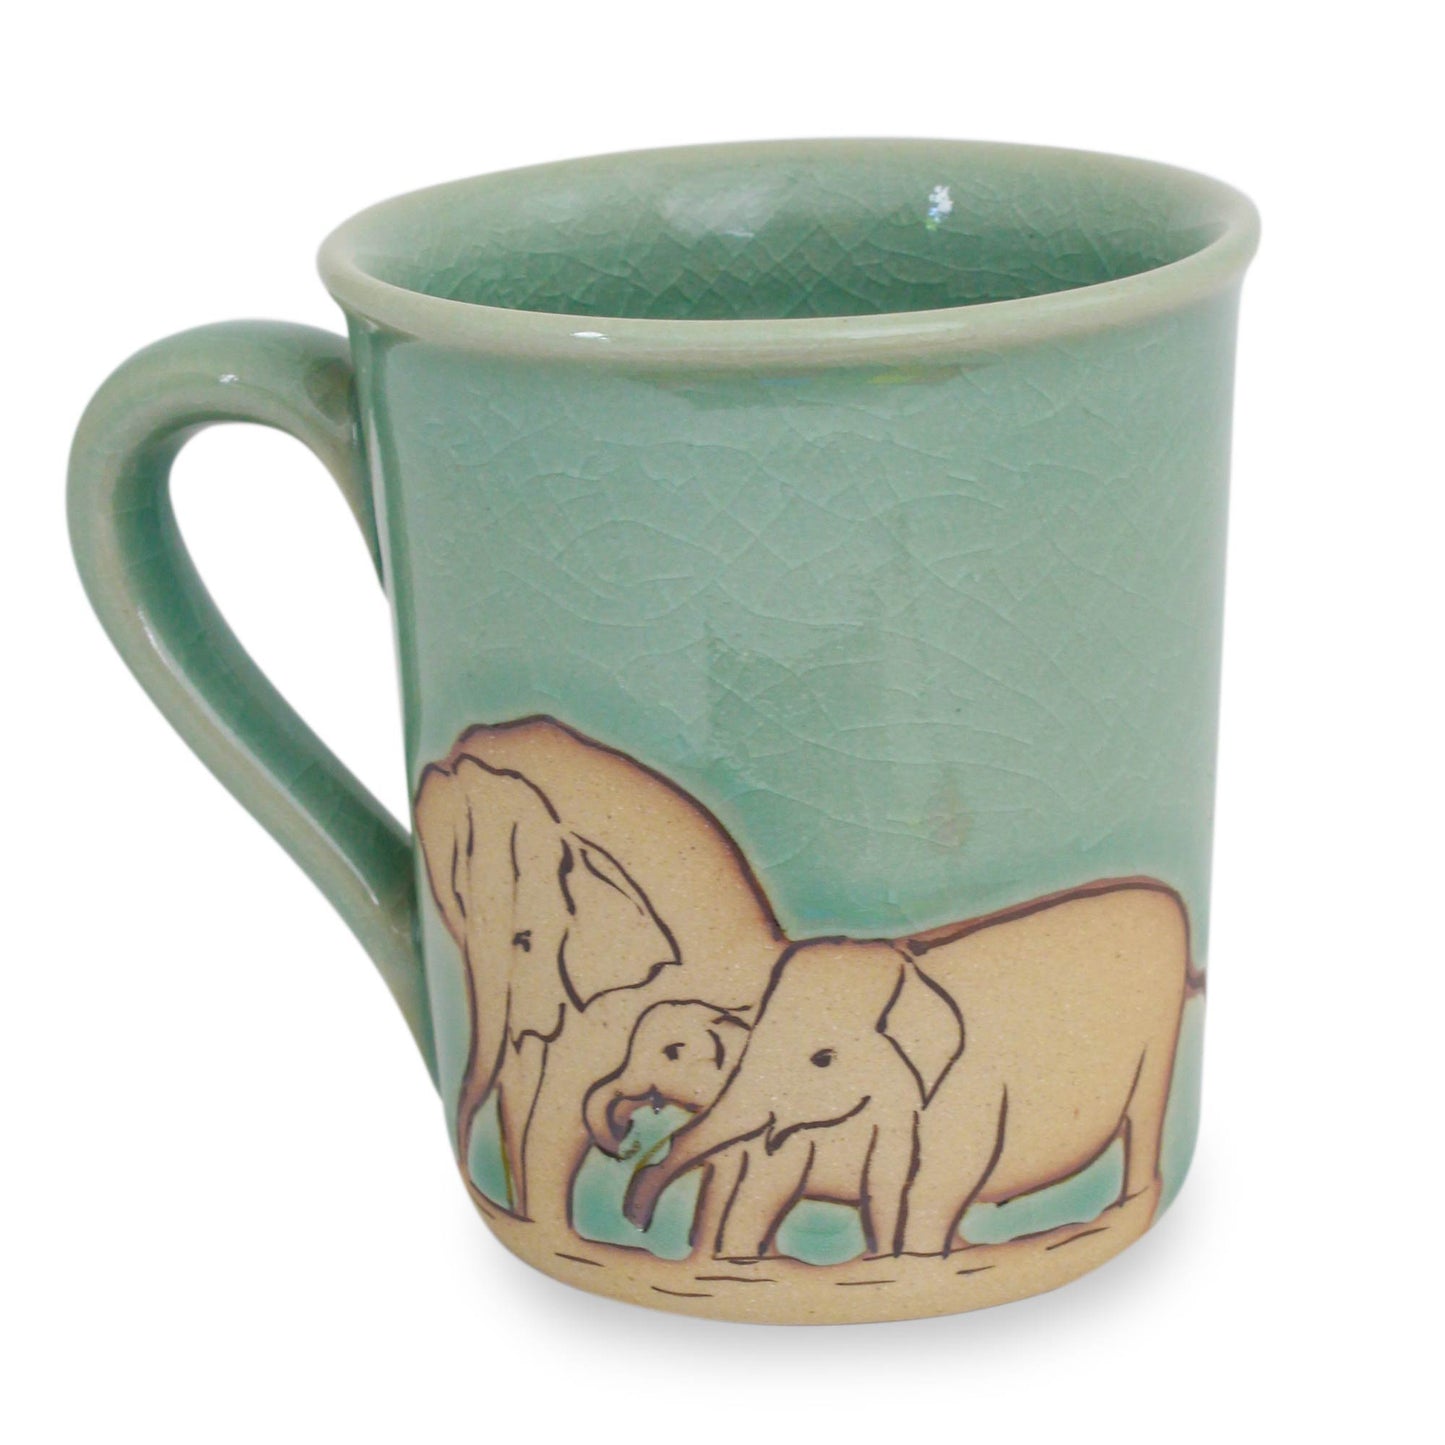 Blue Elephant Family Blue and Brown Elephant Theme Celadon Ceramic Mug